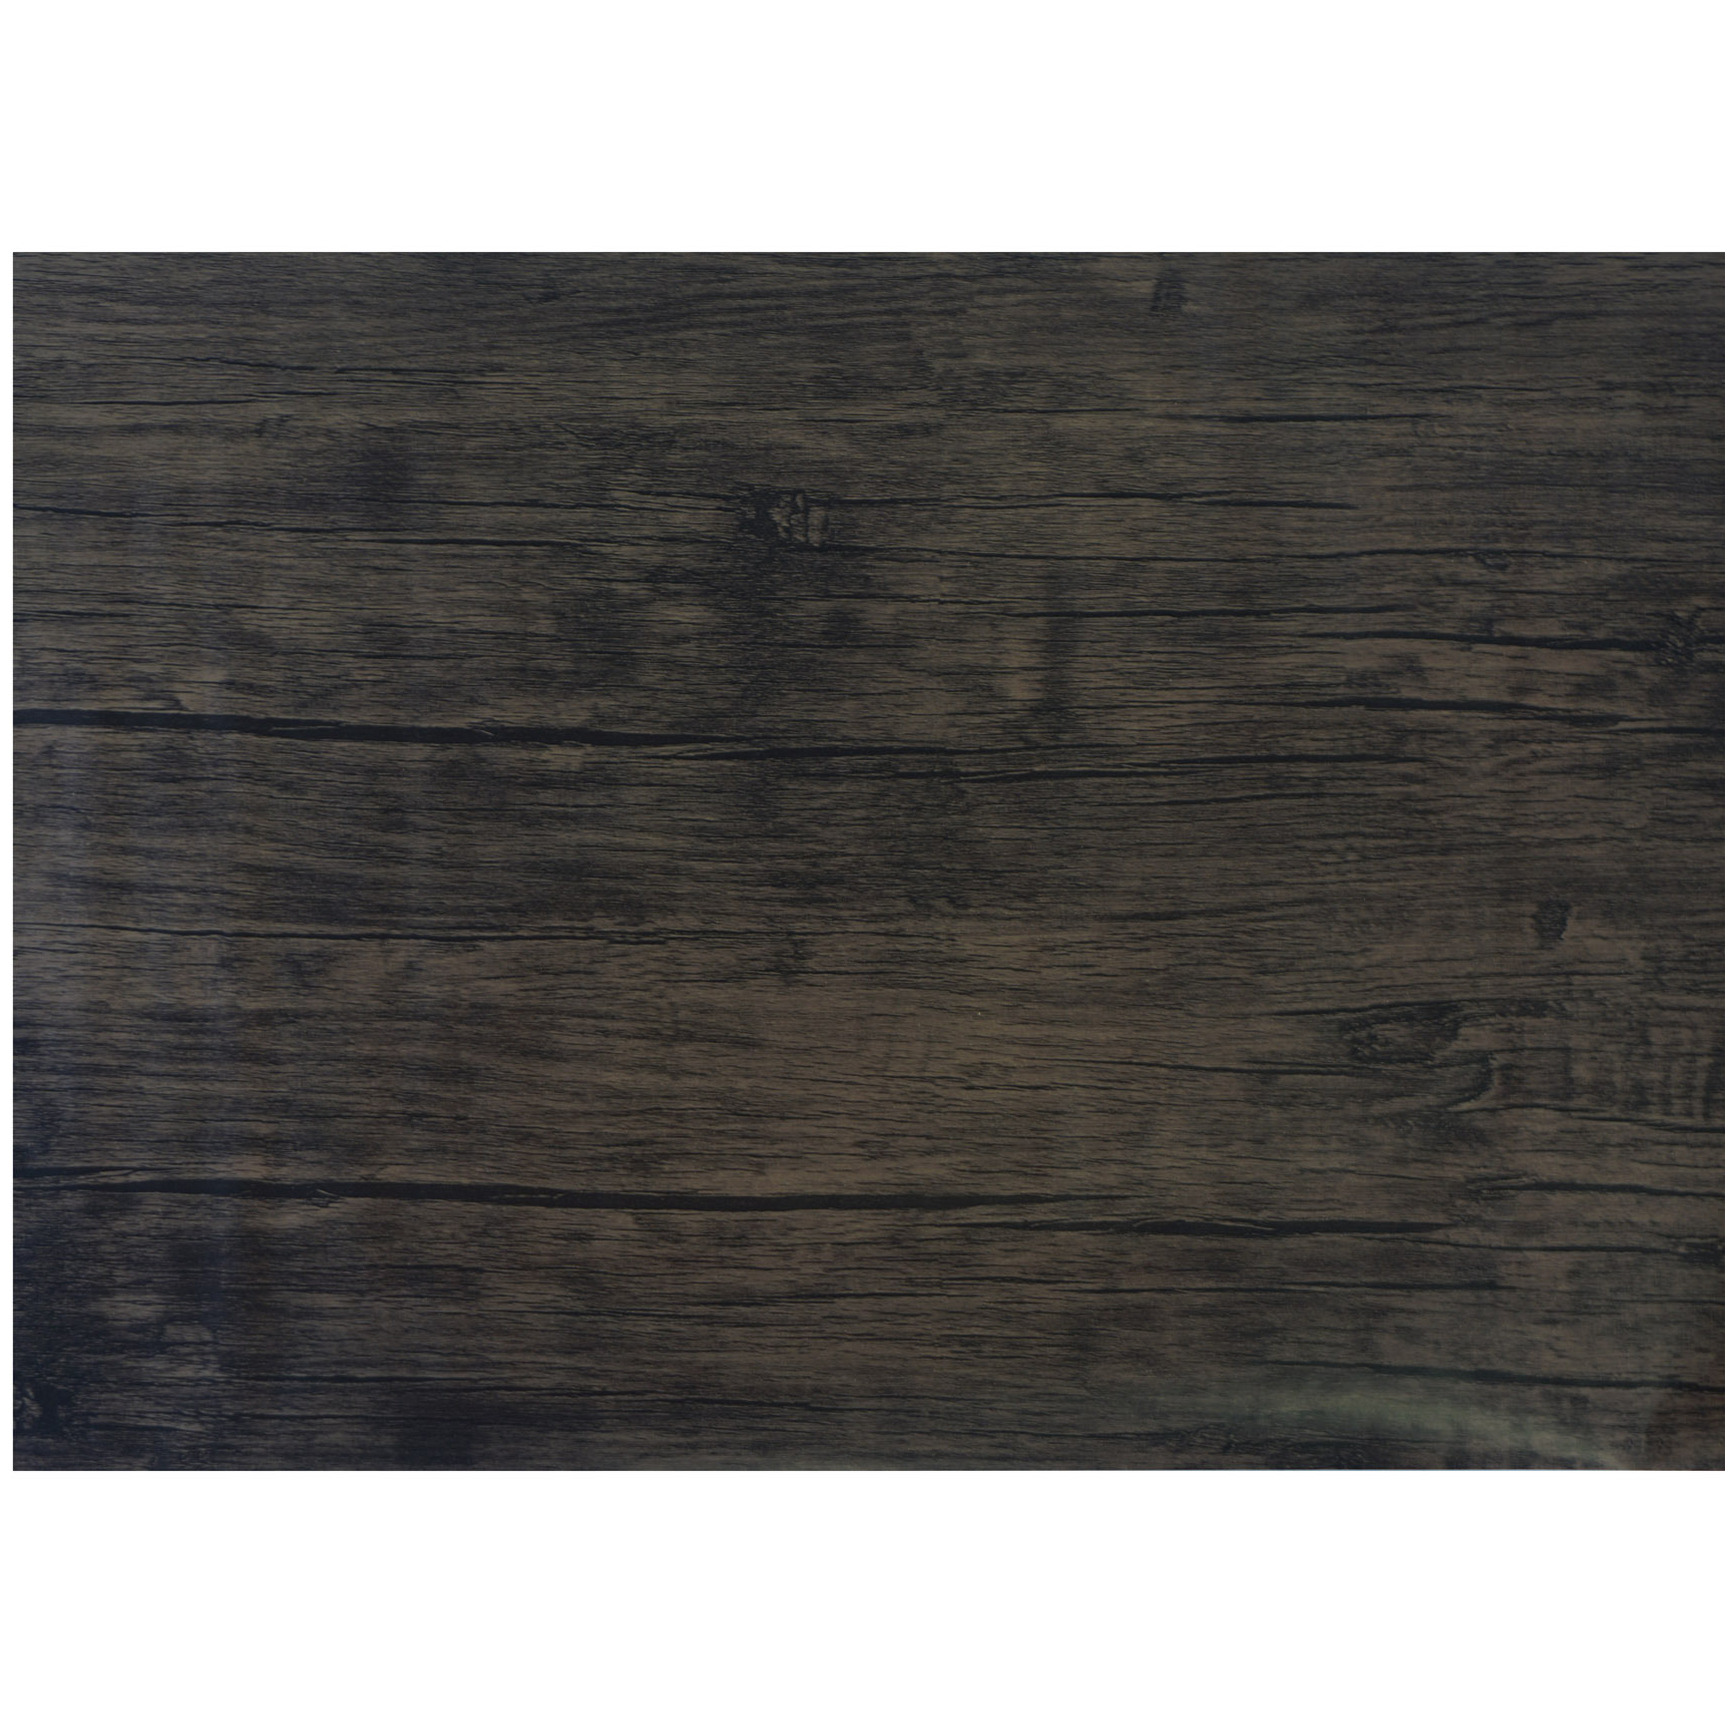 Decoratie plakfolie donkerbruin hout patroon 45 cm x 2 m zelfklevend